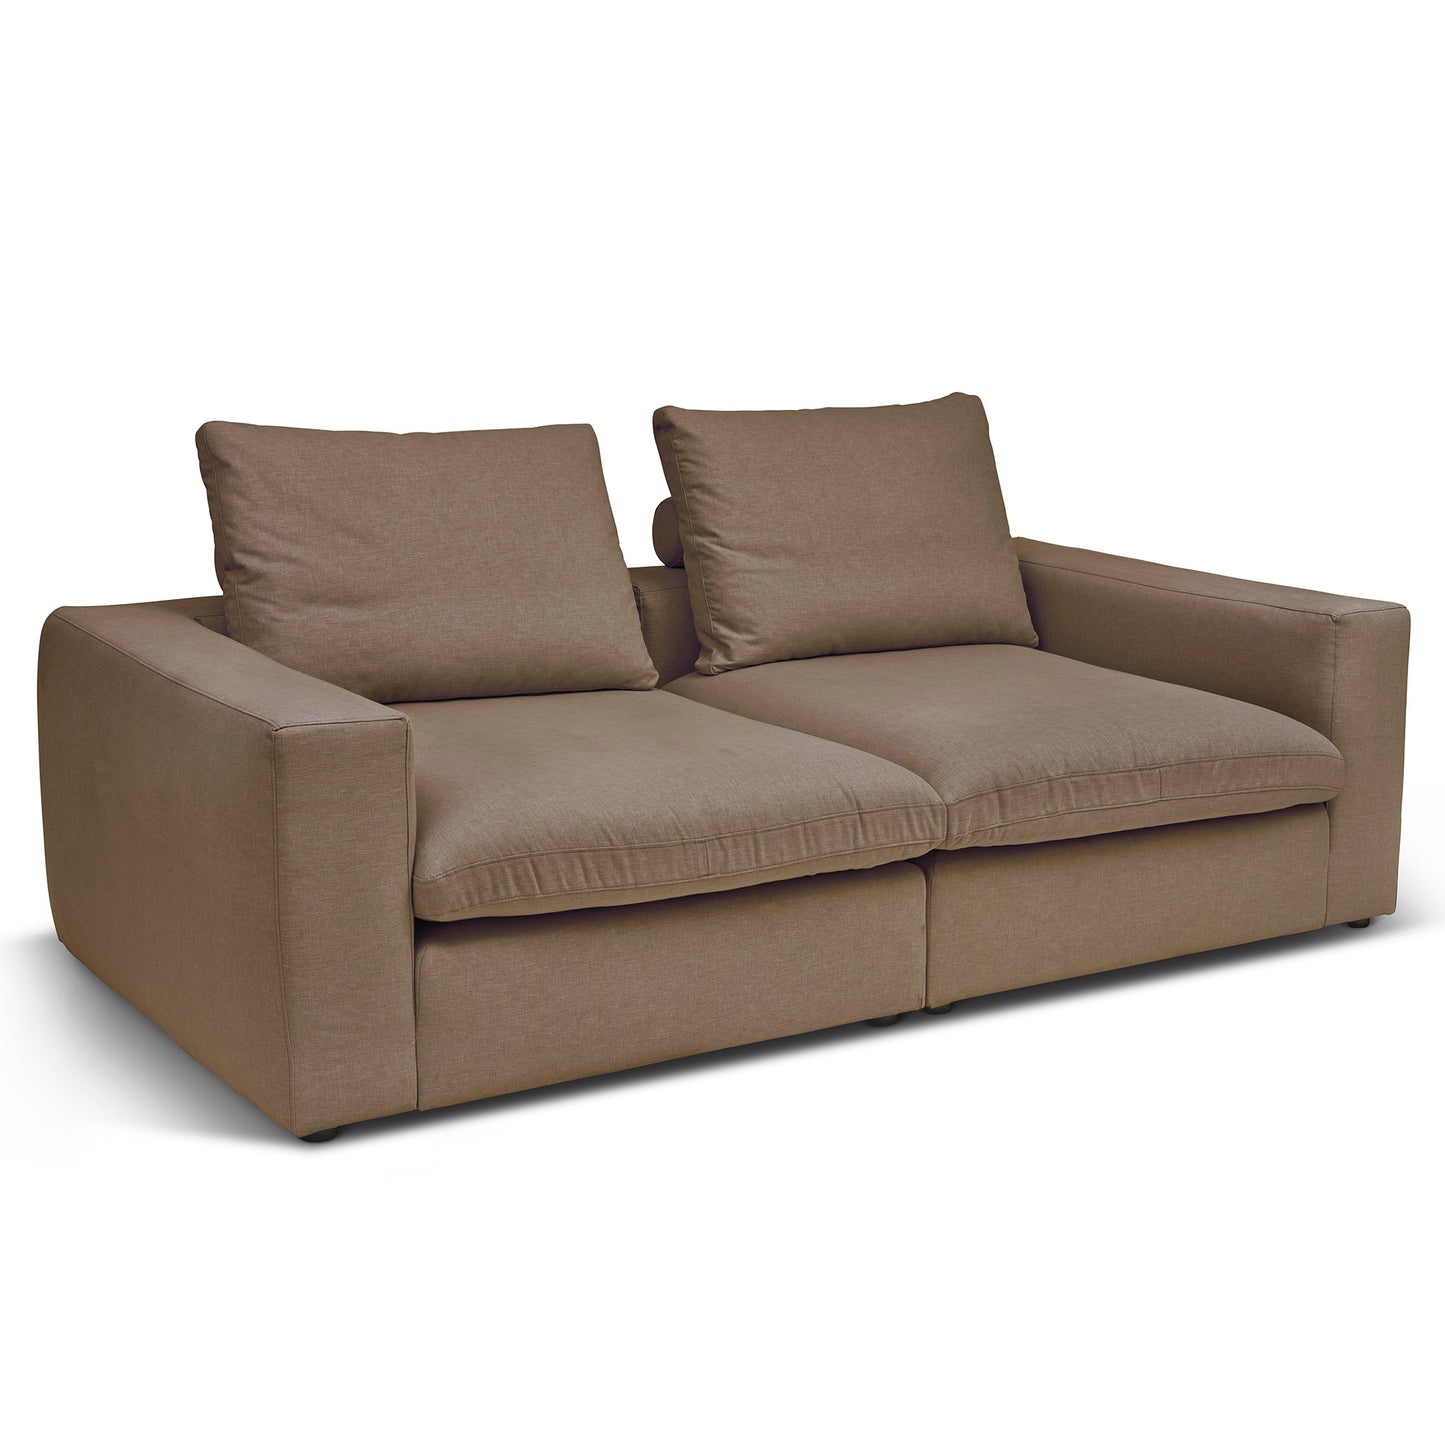 Extra djup 3-sits soffa i ljusbrun färg. Palazzo är en byggbar modulsoffa